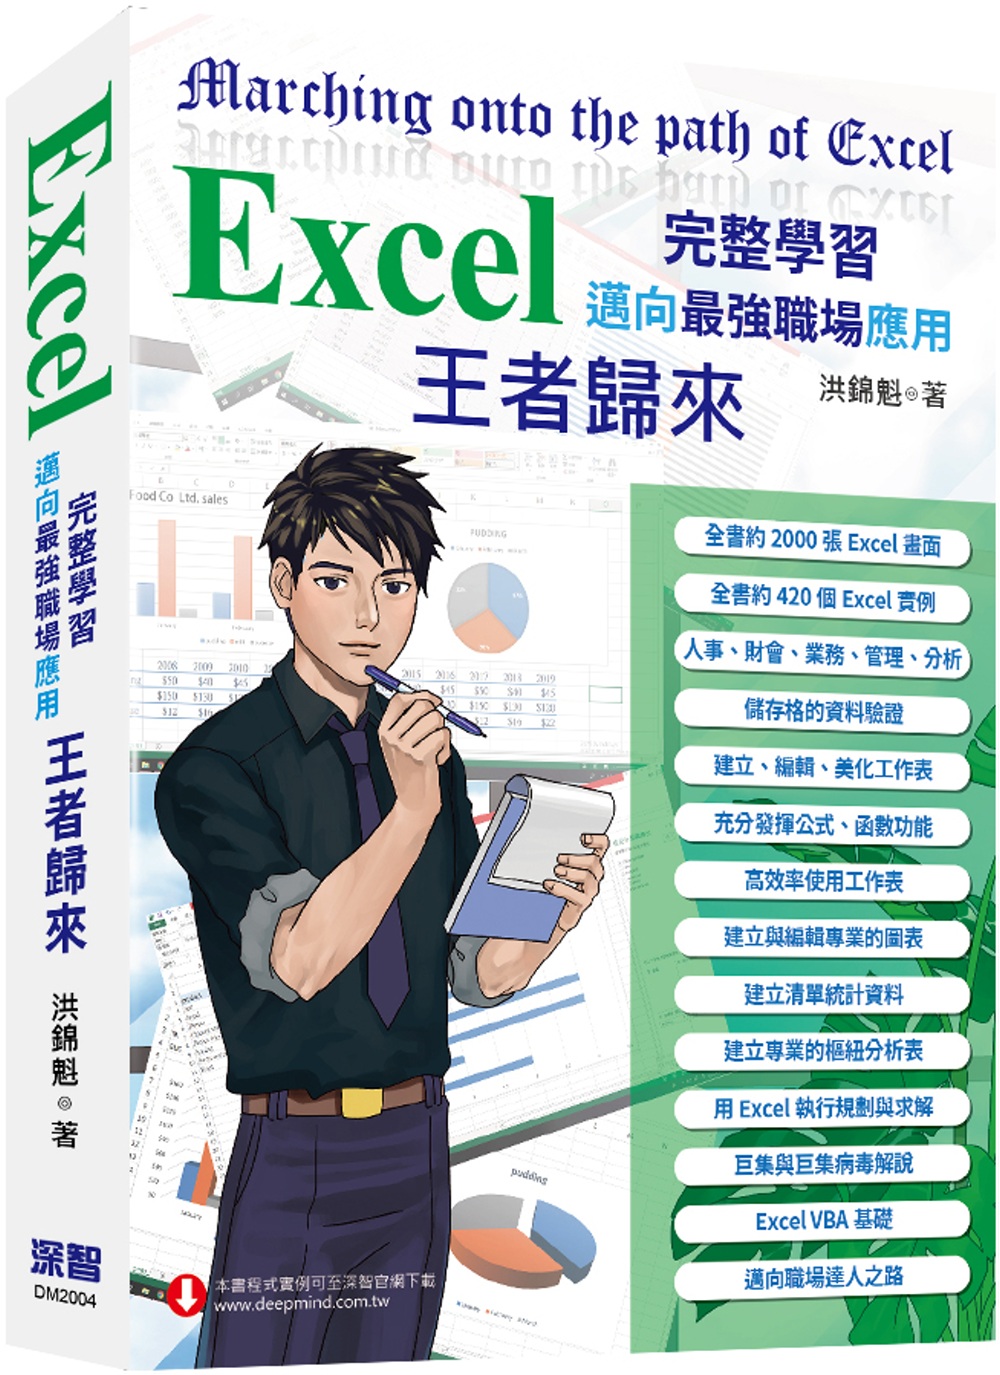 Excel 入門到完整學習 邁向最強職場應用—王者歸來 (全...